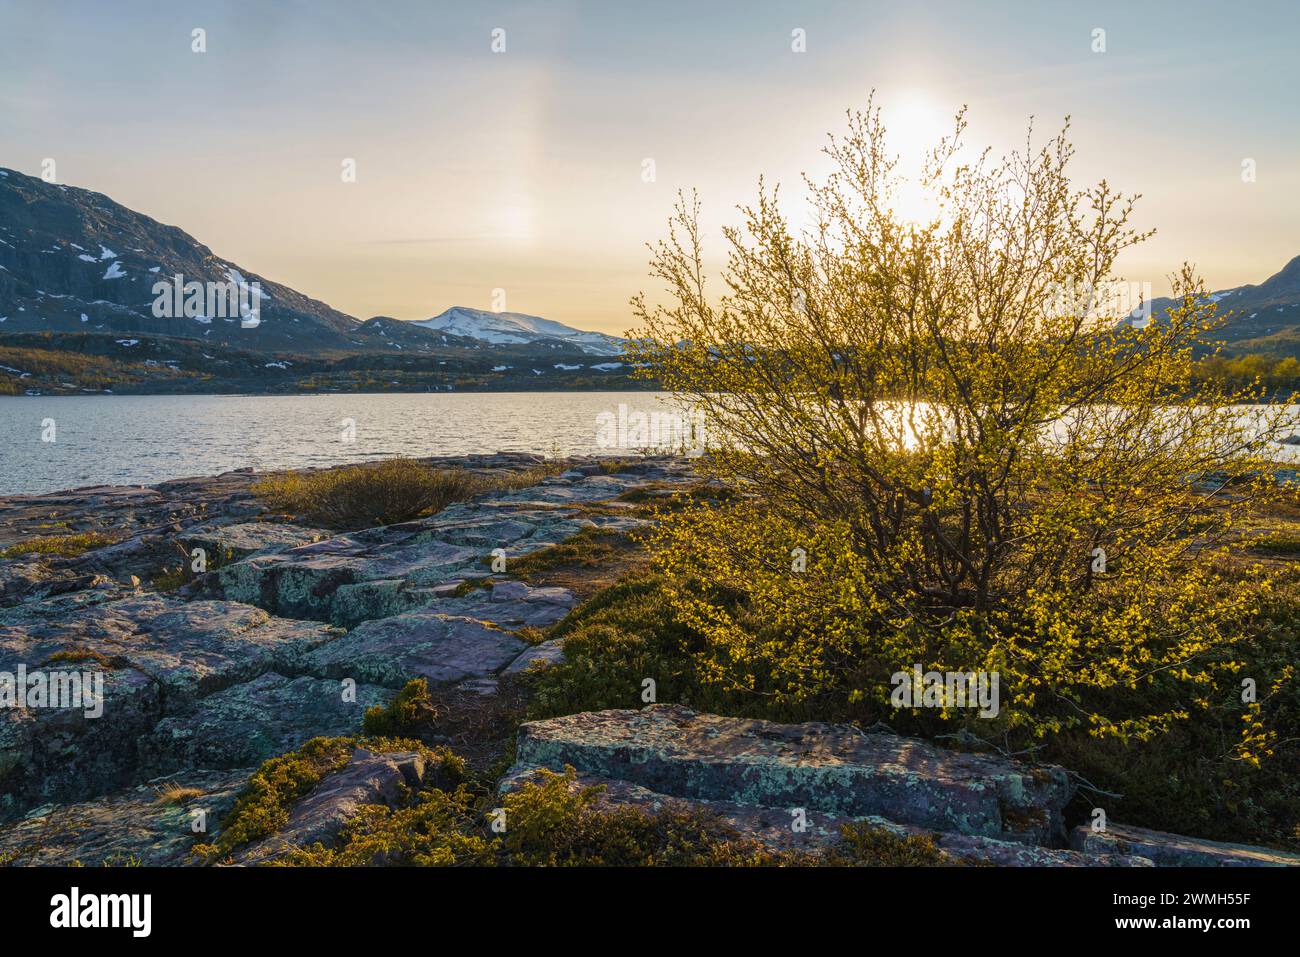 Frühling im Nationalpark Stora sjöfallet mit sonnigem Abend und Birken und Berg im Hintergrund, Gällivare County, Schwedisch Lappland, Swed Stockfoto